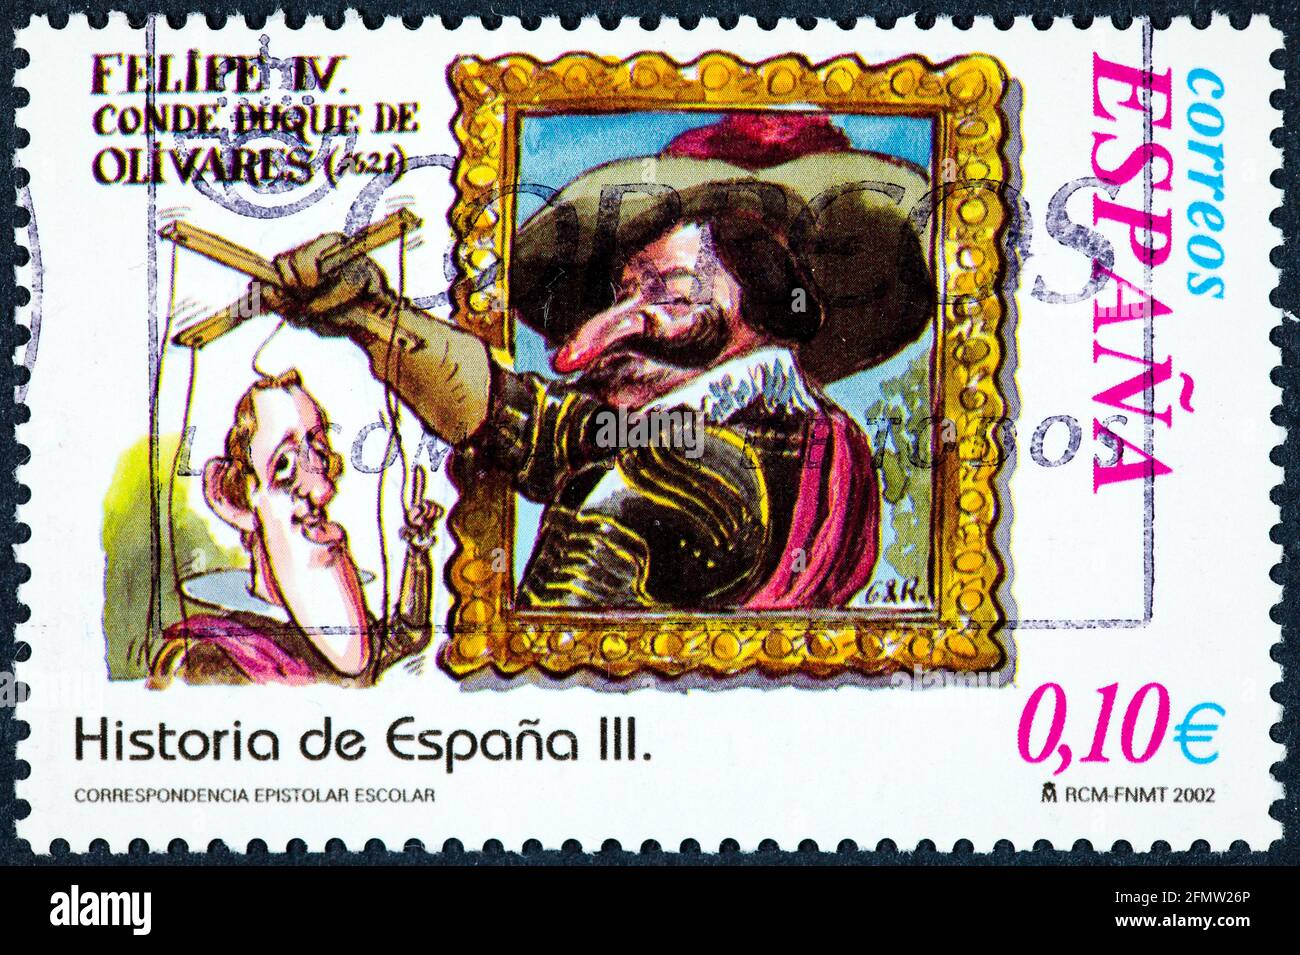 SPAGNA - CIRCA 2002: Un francobollo stampato in Spagna mostra Felipe IV Conte Duca d'Olivares Foto Stock